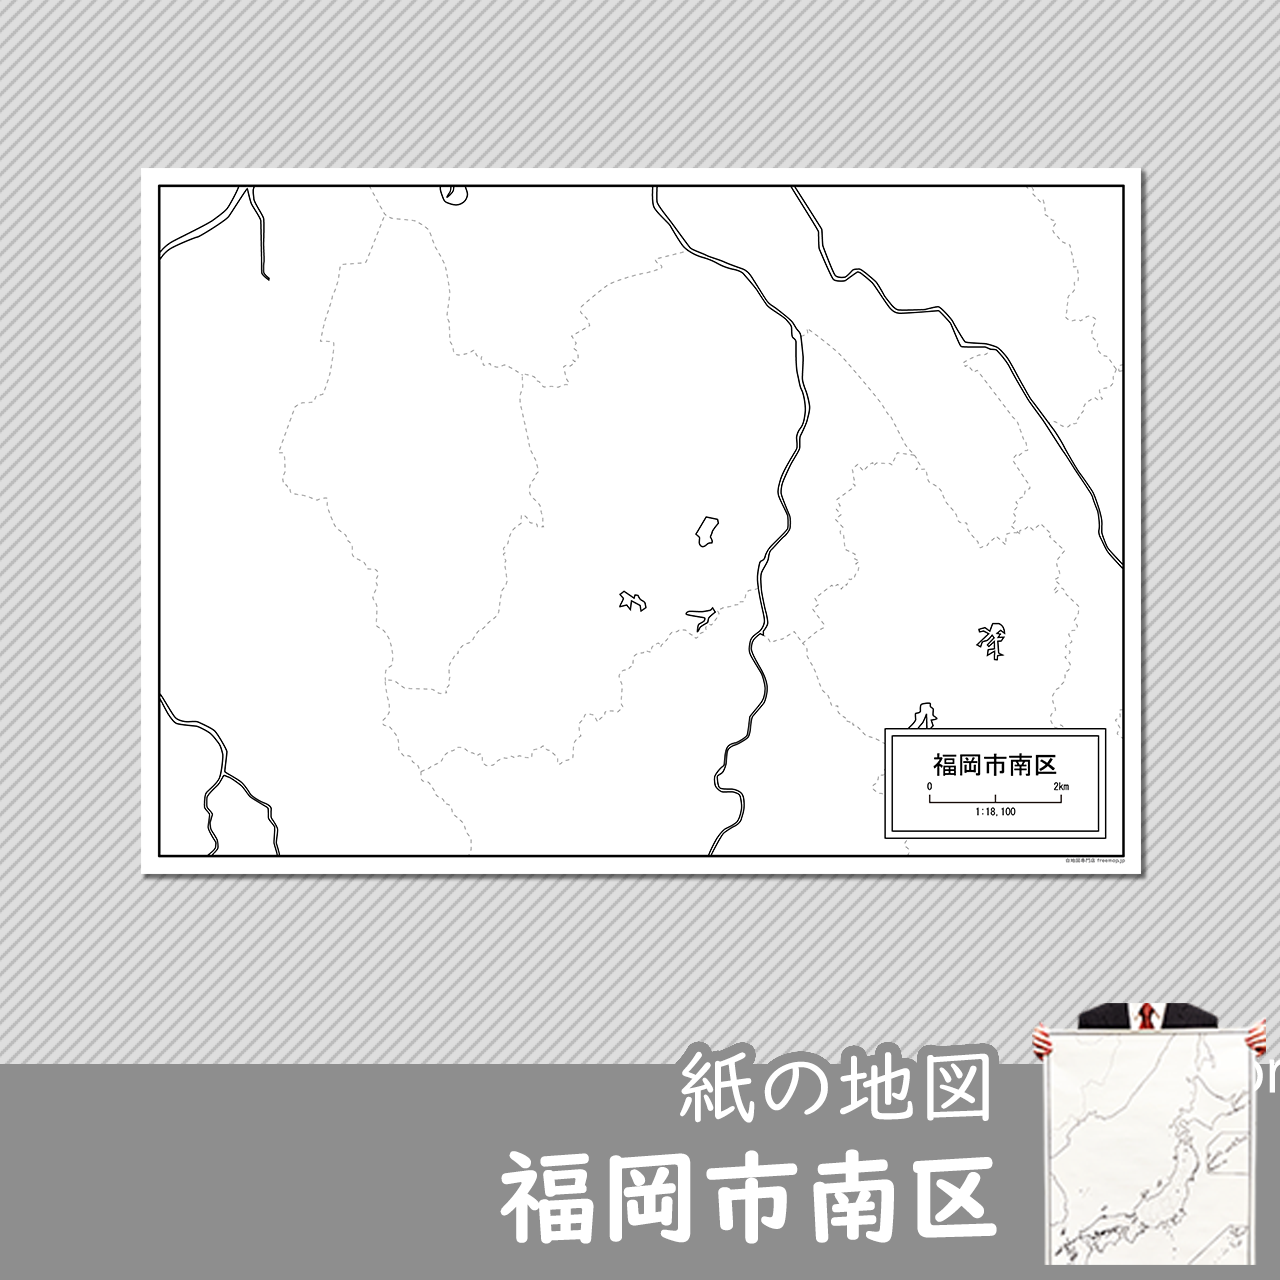 福岡市南区の紙の白地図のサムネイル